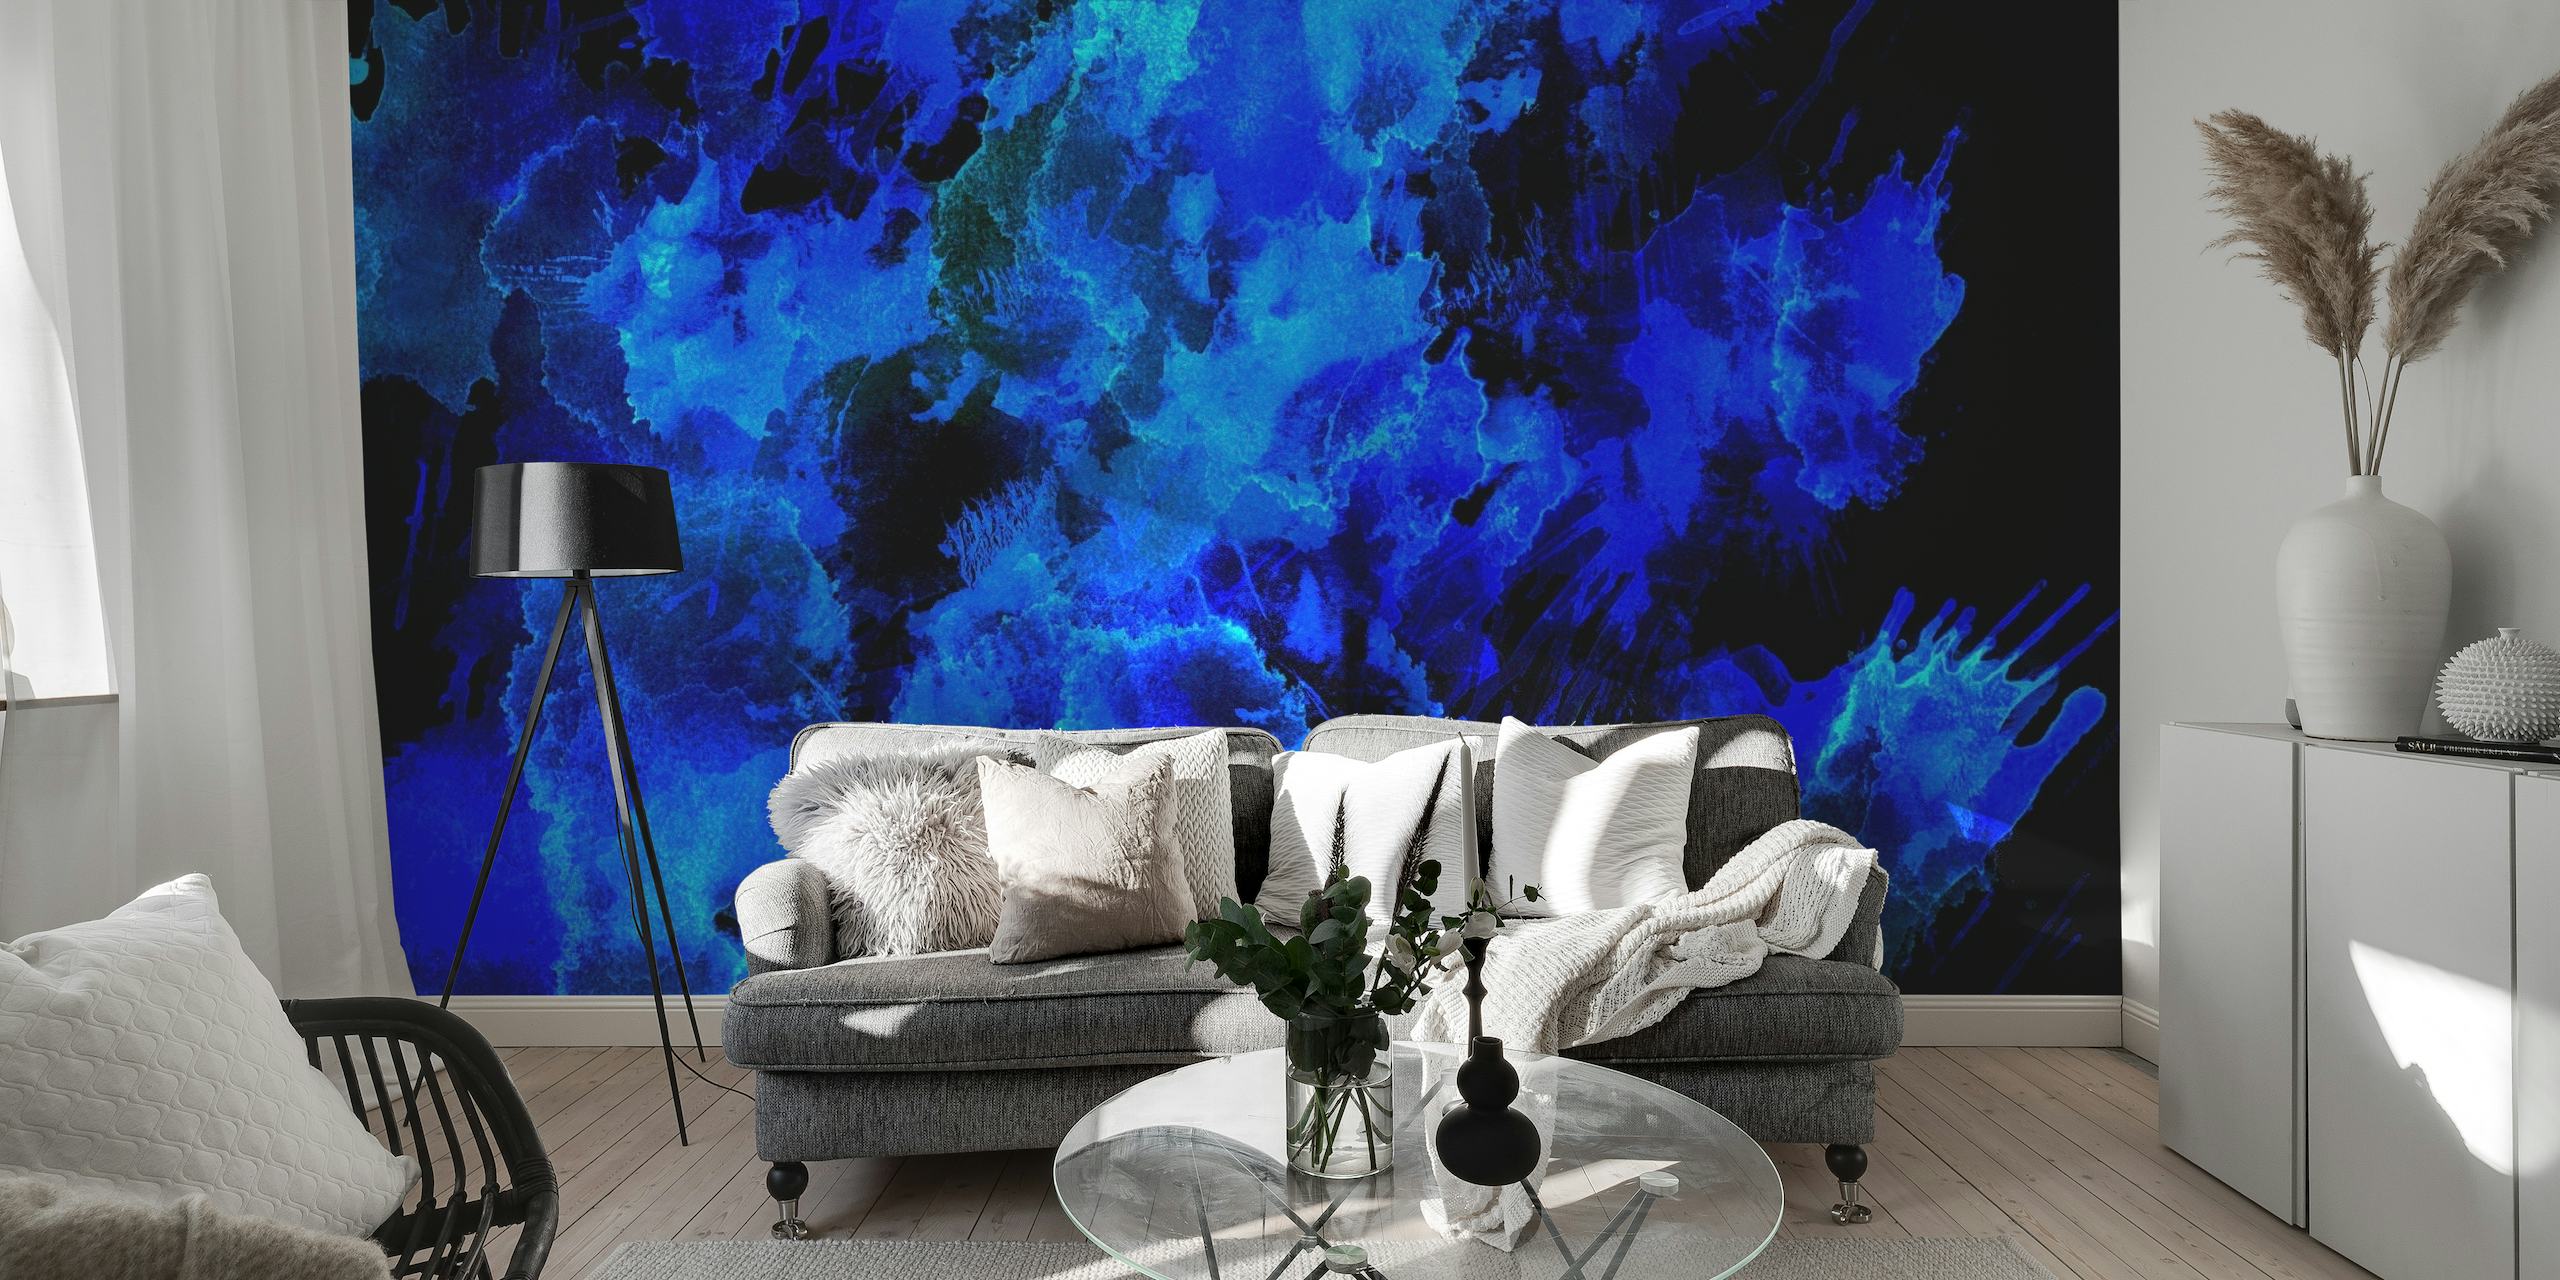 Peinture murale abstraite aux tons bleus invoquant la beauté du ciel nocturne ou des profondeurs océaniques